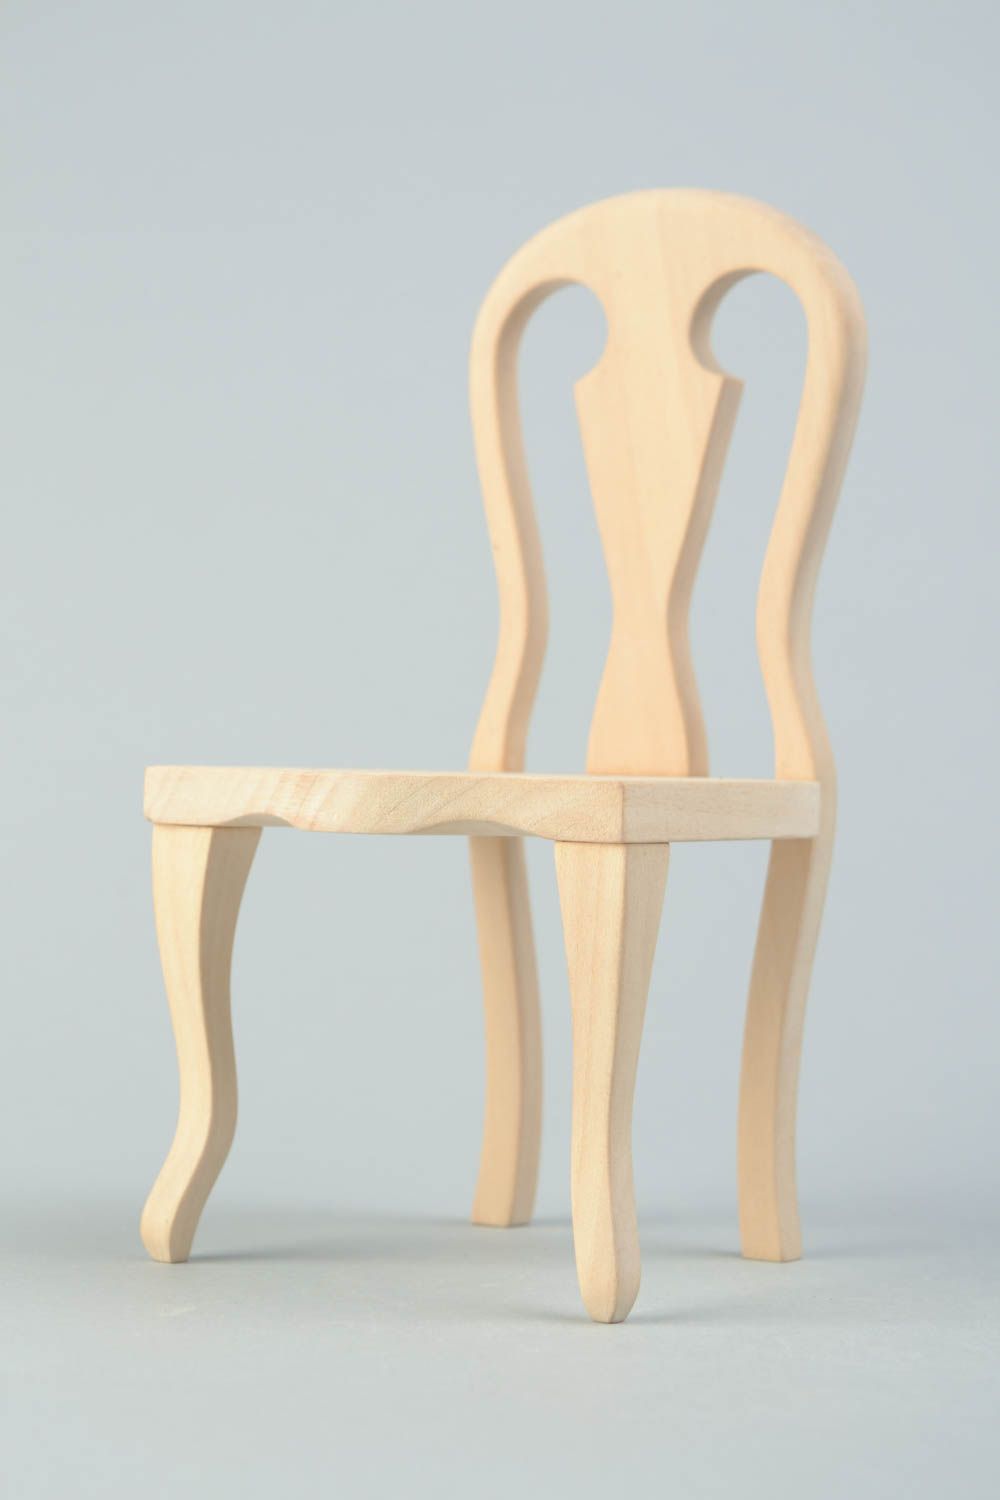 Деревянный стул для куклы заготовка под роспись или декупаж ручной работы фото 5